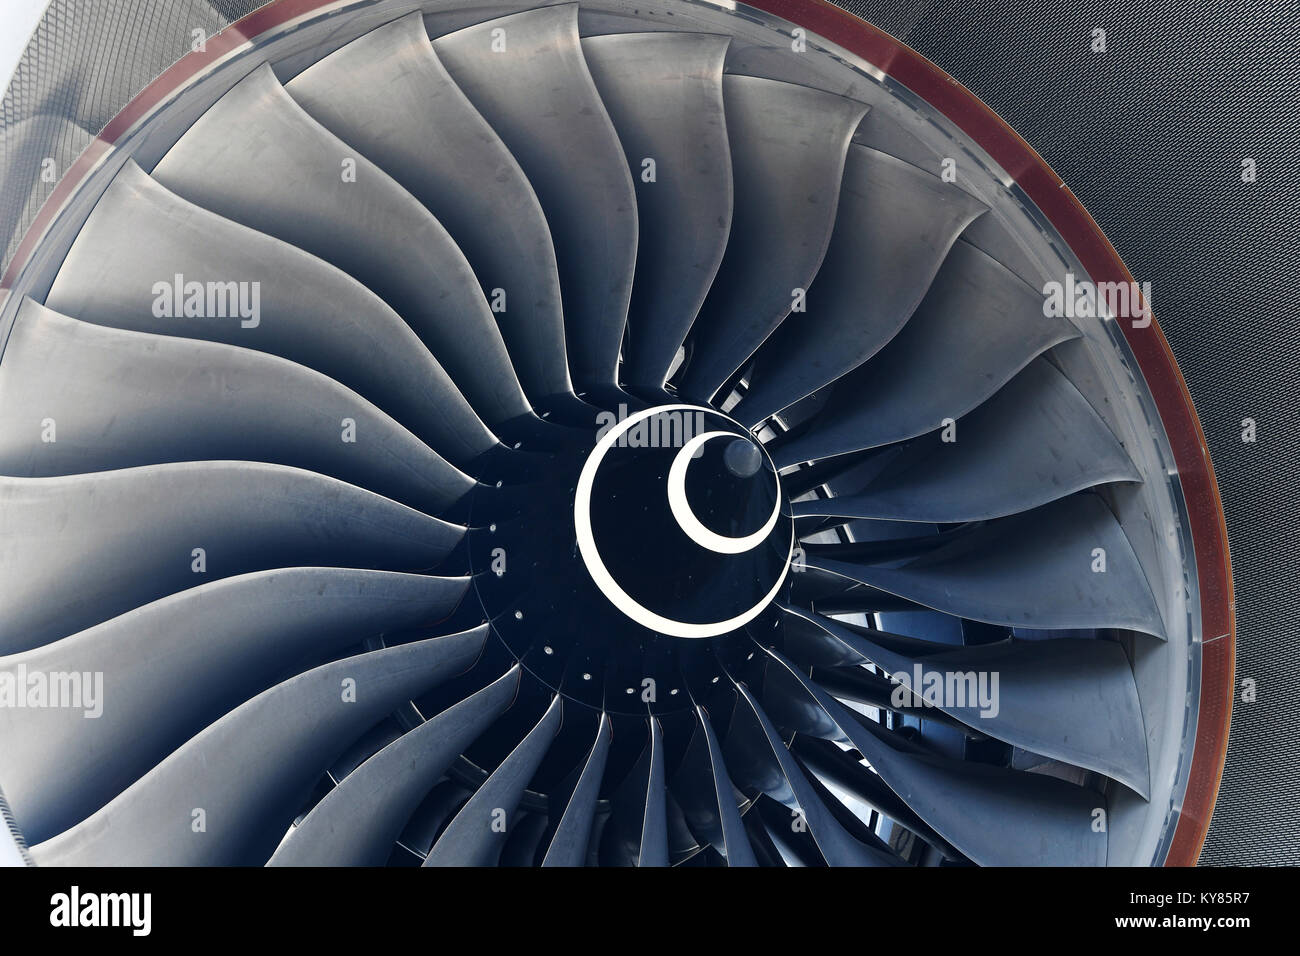 Lufthansa, Airbus A350-900, la pala della turbina, motore, manutenzione aeromobili, aereo, piano, compagnie aeree, airways, Aeroporto di Monaco di Baviera, Foto Stock